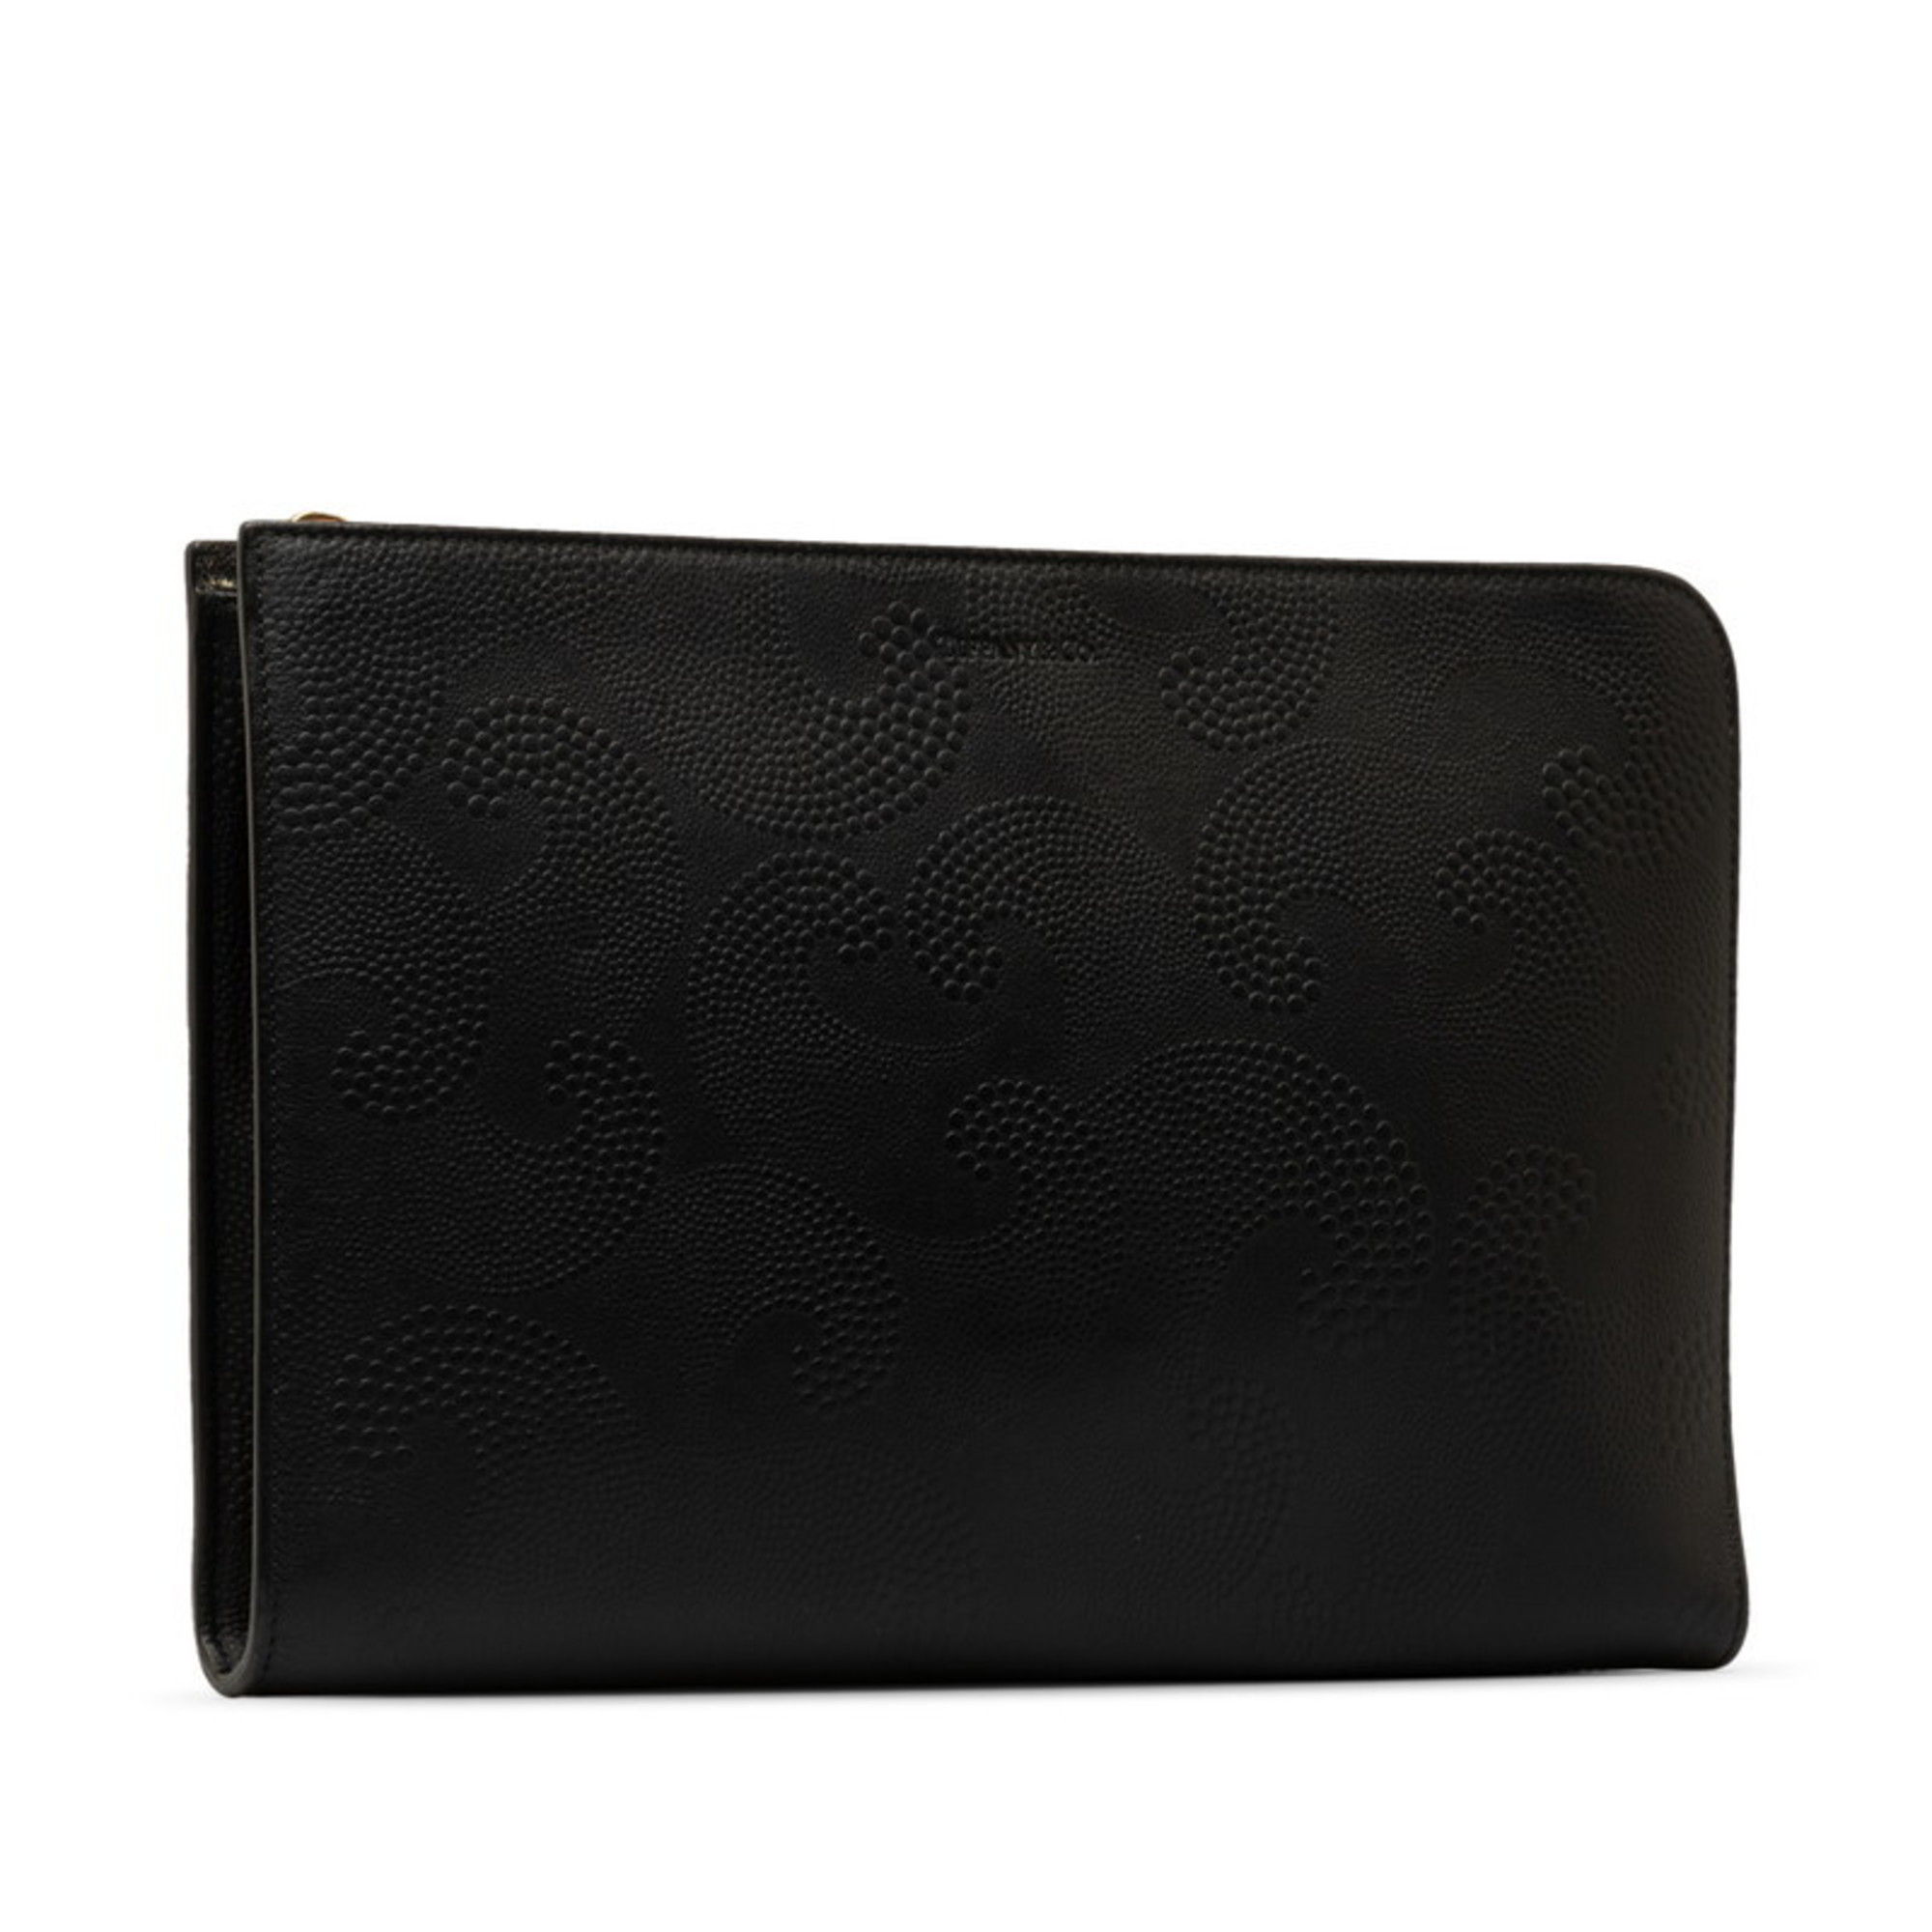 Tiffany clutch bag, black leather, women's, TIFFANY&Co.